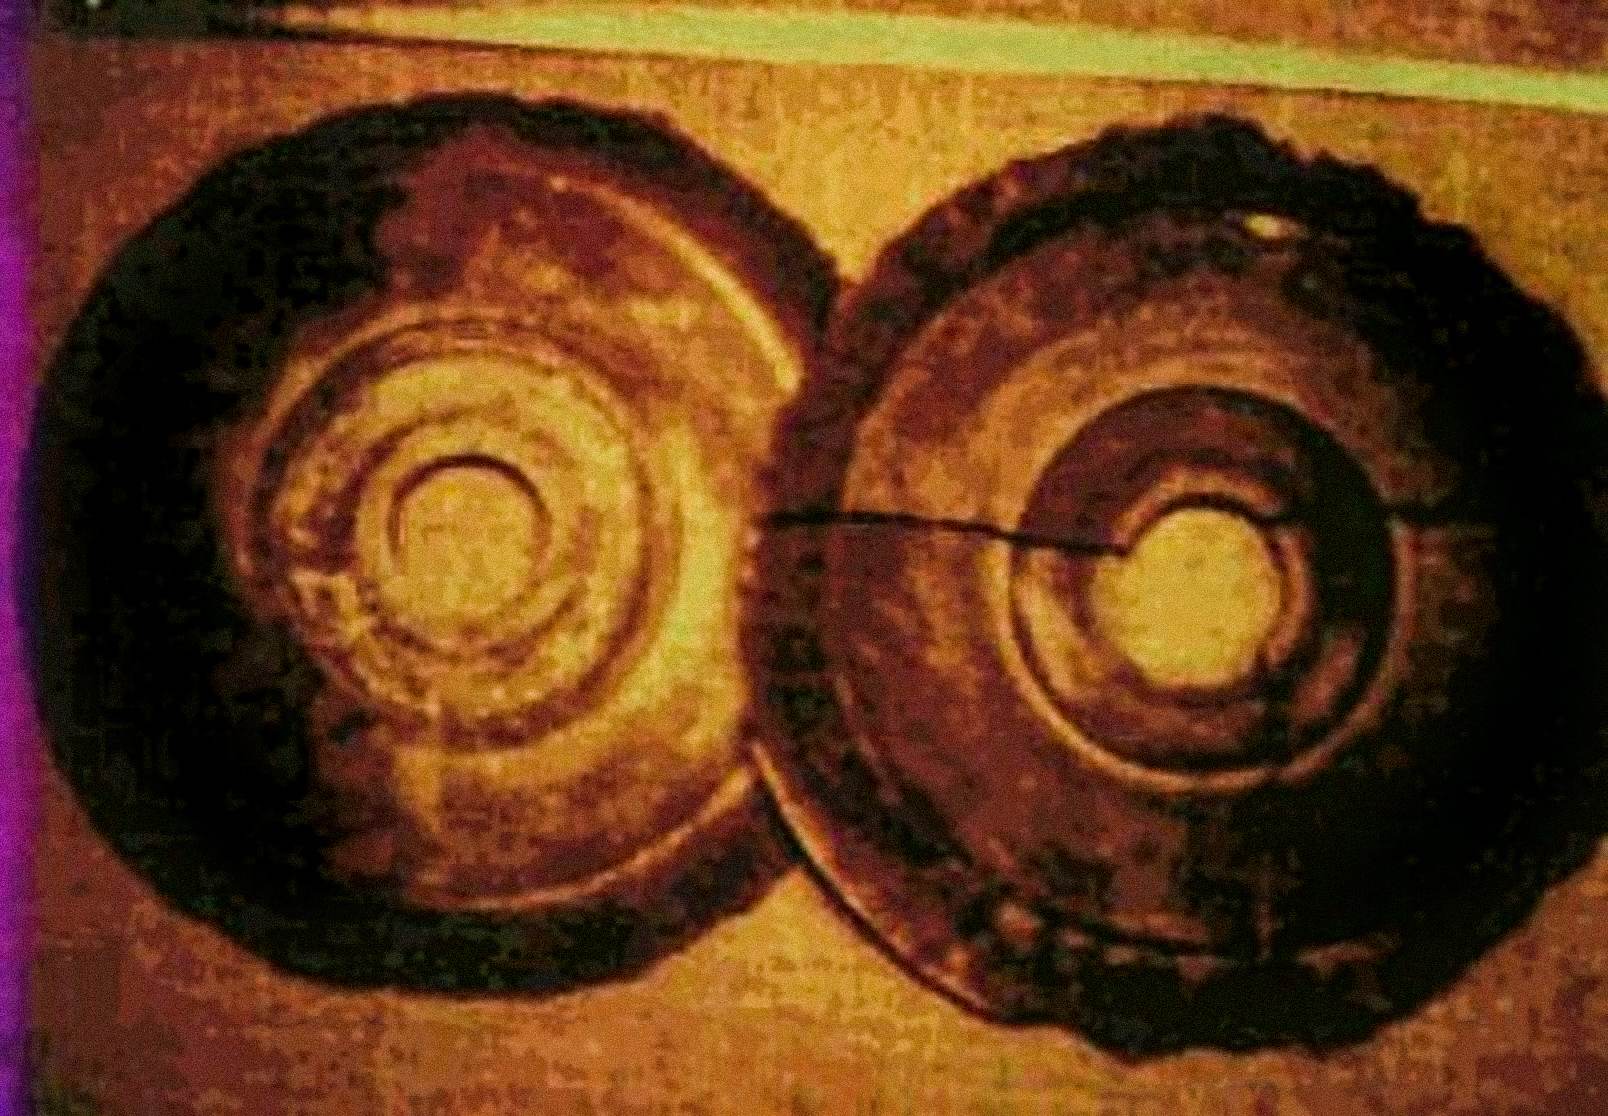 Dina 1974, Ernst Wegerer, insinyur Austria, difoto dua disk nu minuhan déskripsi tina Dropa Stones. Anjeunna dina tur dipandu Banpo-Museum di Xian, nalika anjeunna ningali cakram batu dina tampilan. Anjeunna nyatakeun yén anjeunna ningali liang di tengah unggal piringan sareng hiéroglif dina alur siga spiral anu sawaréh.